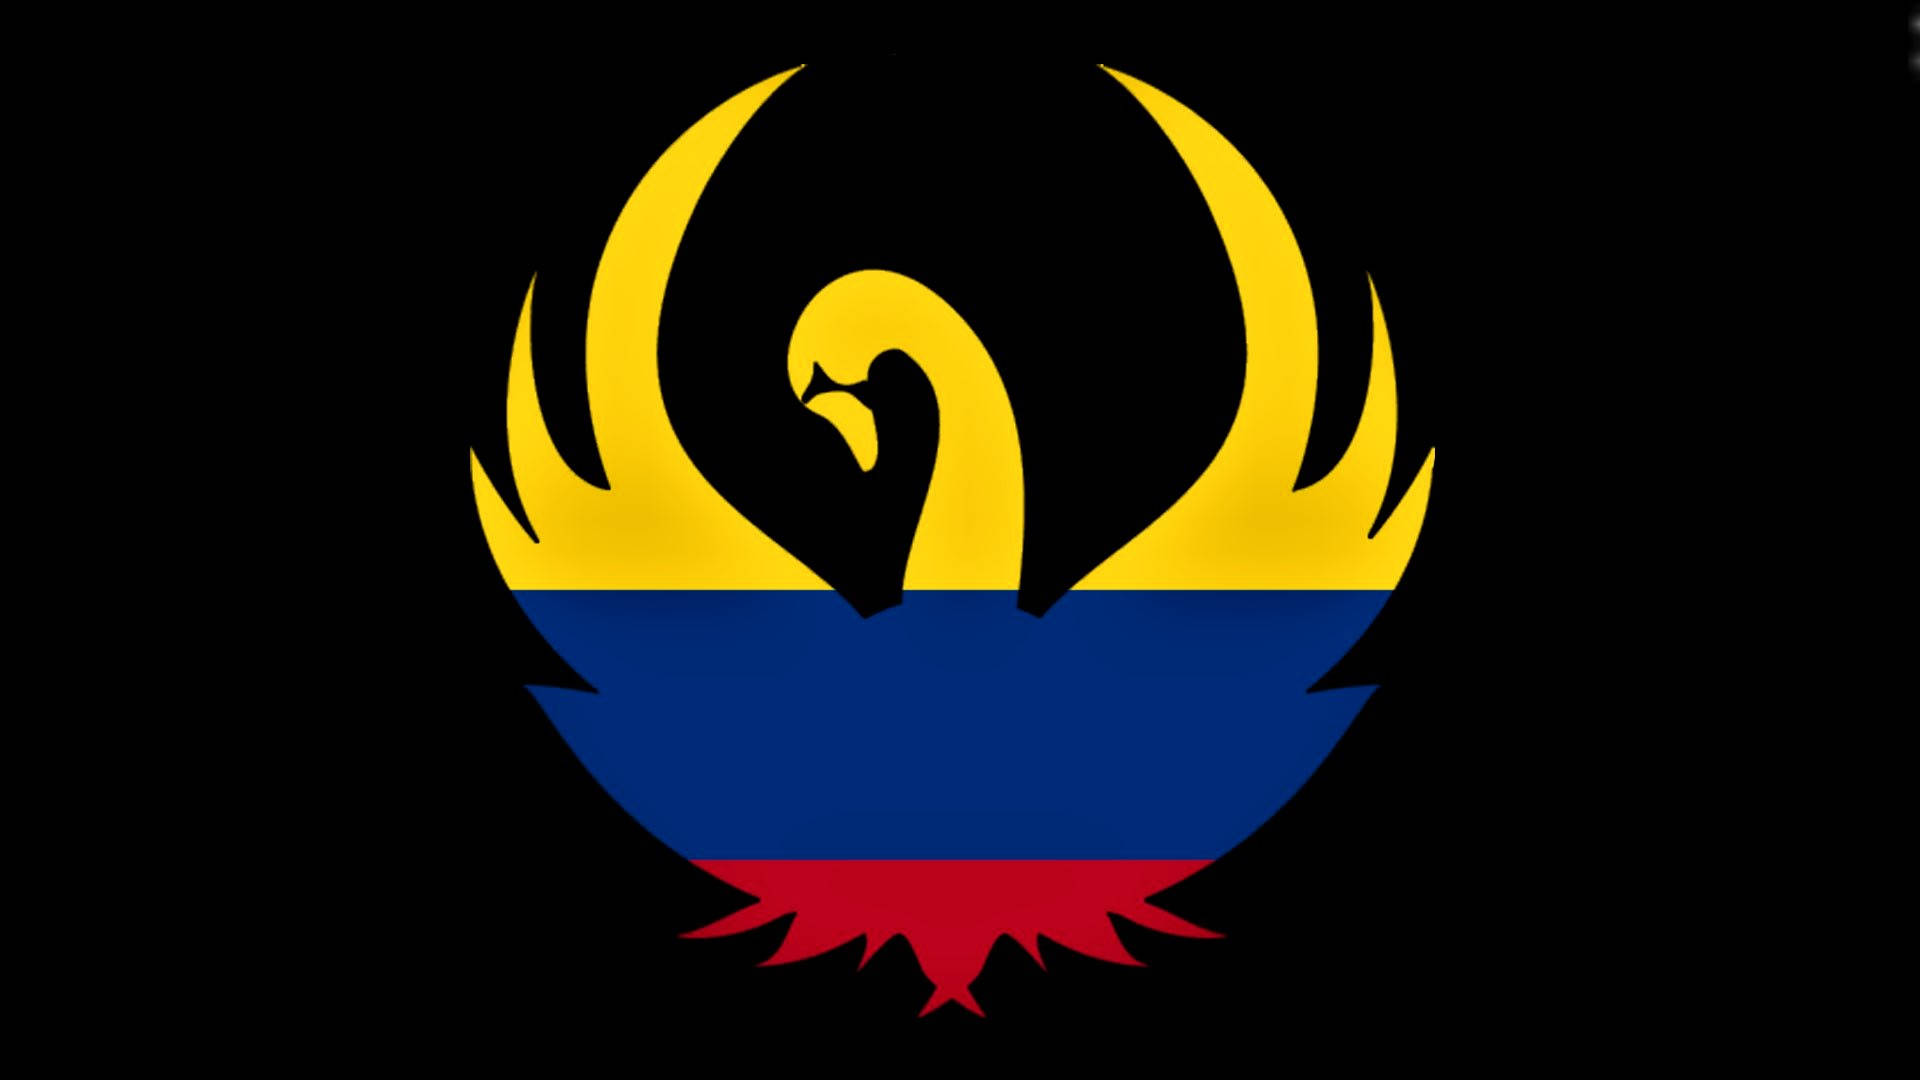 Artede Un Cisne Con La Bandera De Colombia. Fondo de pantalla